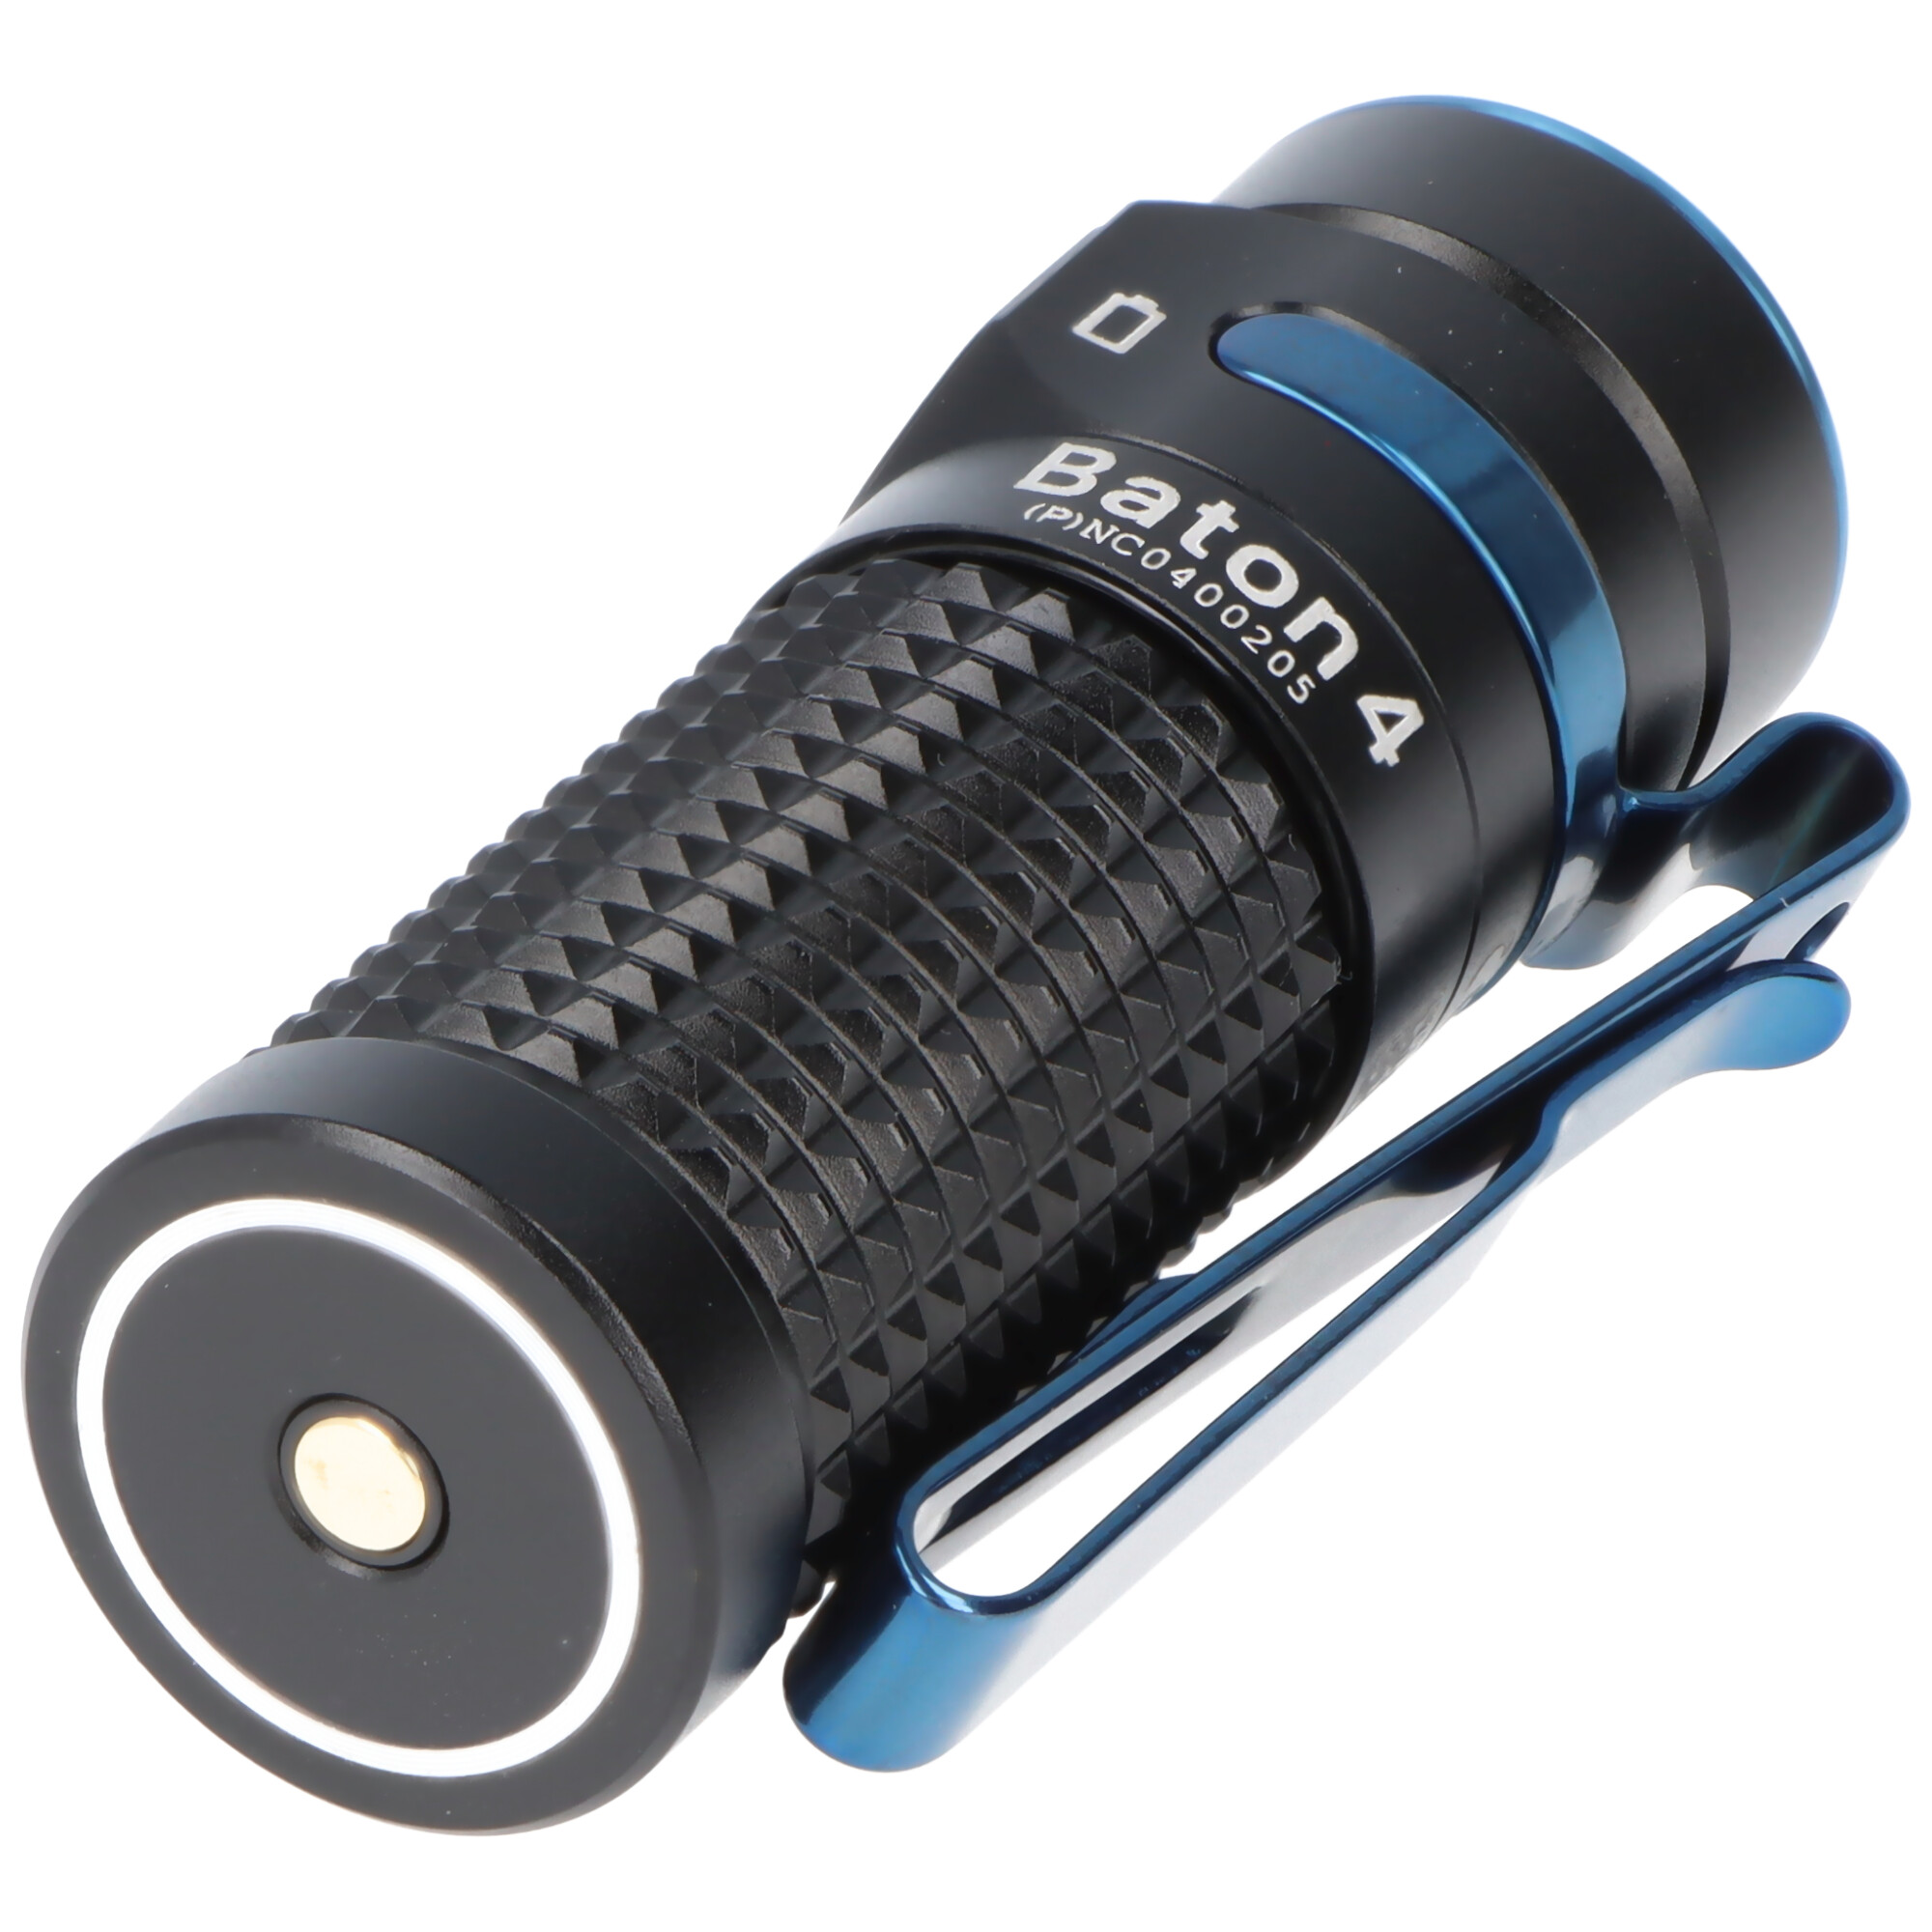 Olight Baton 4 Premium Edition schwarz, LED-Taschenlampe mit Ladecase, ultra-kompakt und leistungsstark, 1300 Lumen